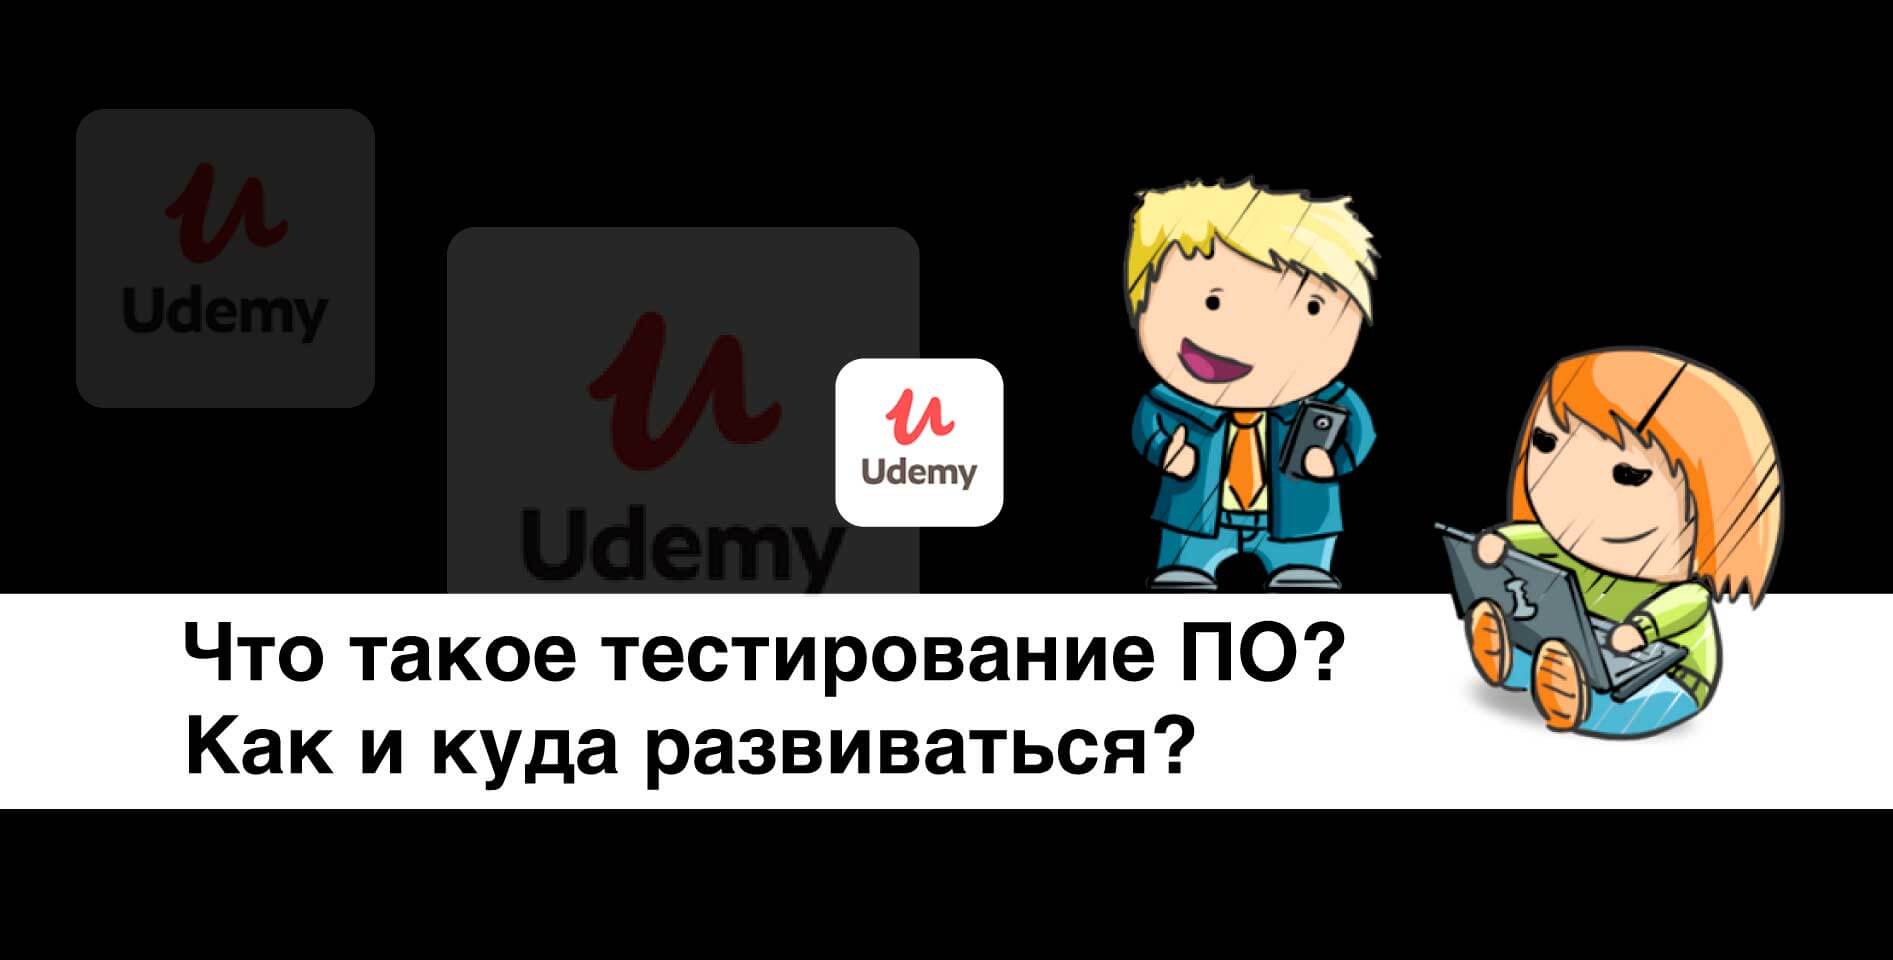 Udemy — Что такое тестирование ПО? Как и куда развиваться?